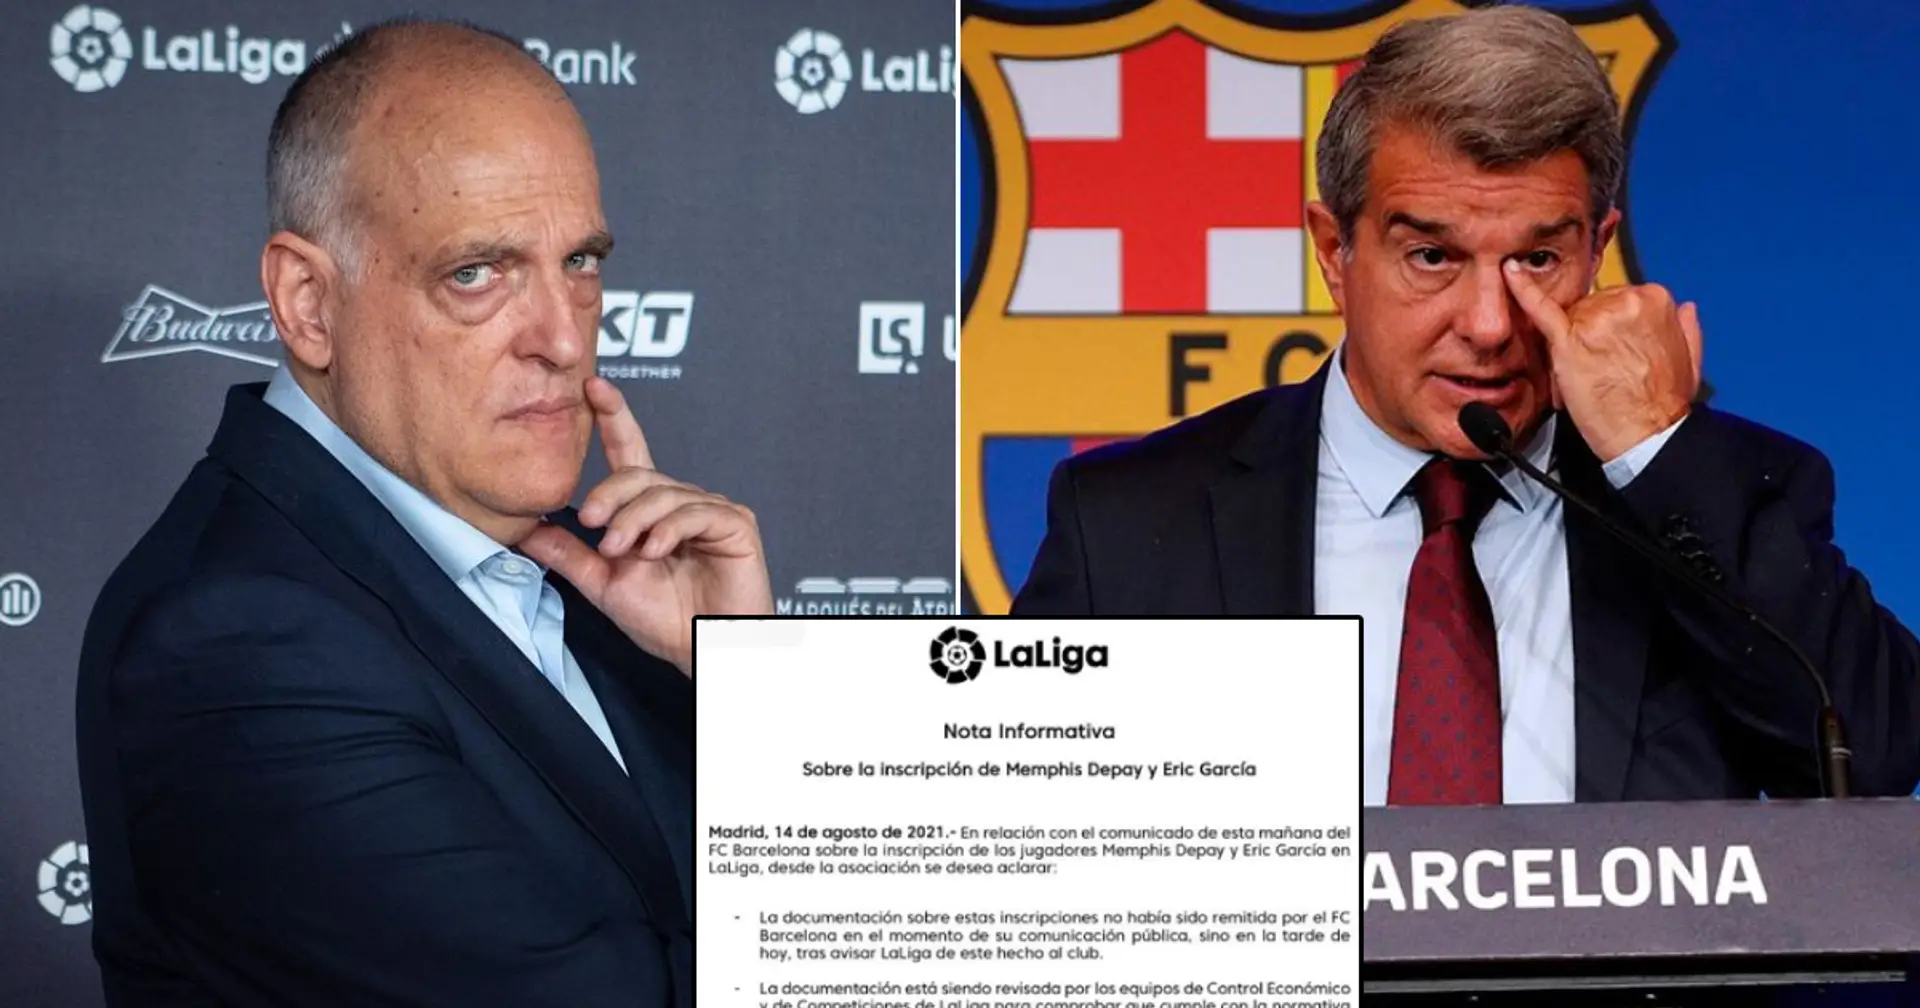 A L'INSTANT: La Liga publie une déclaration affirmant que Barcelone n'a pas encore finalisé l'enregistrement de Depay, Garcia